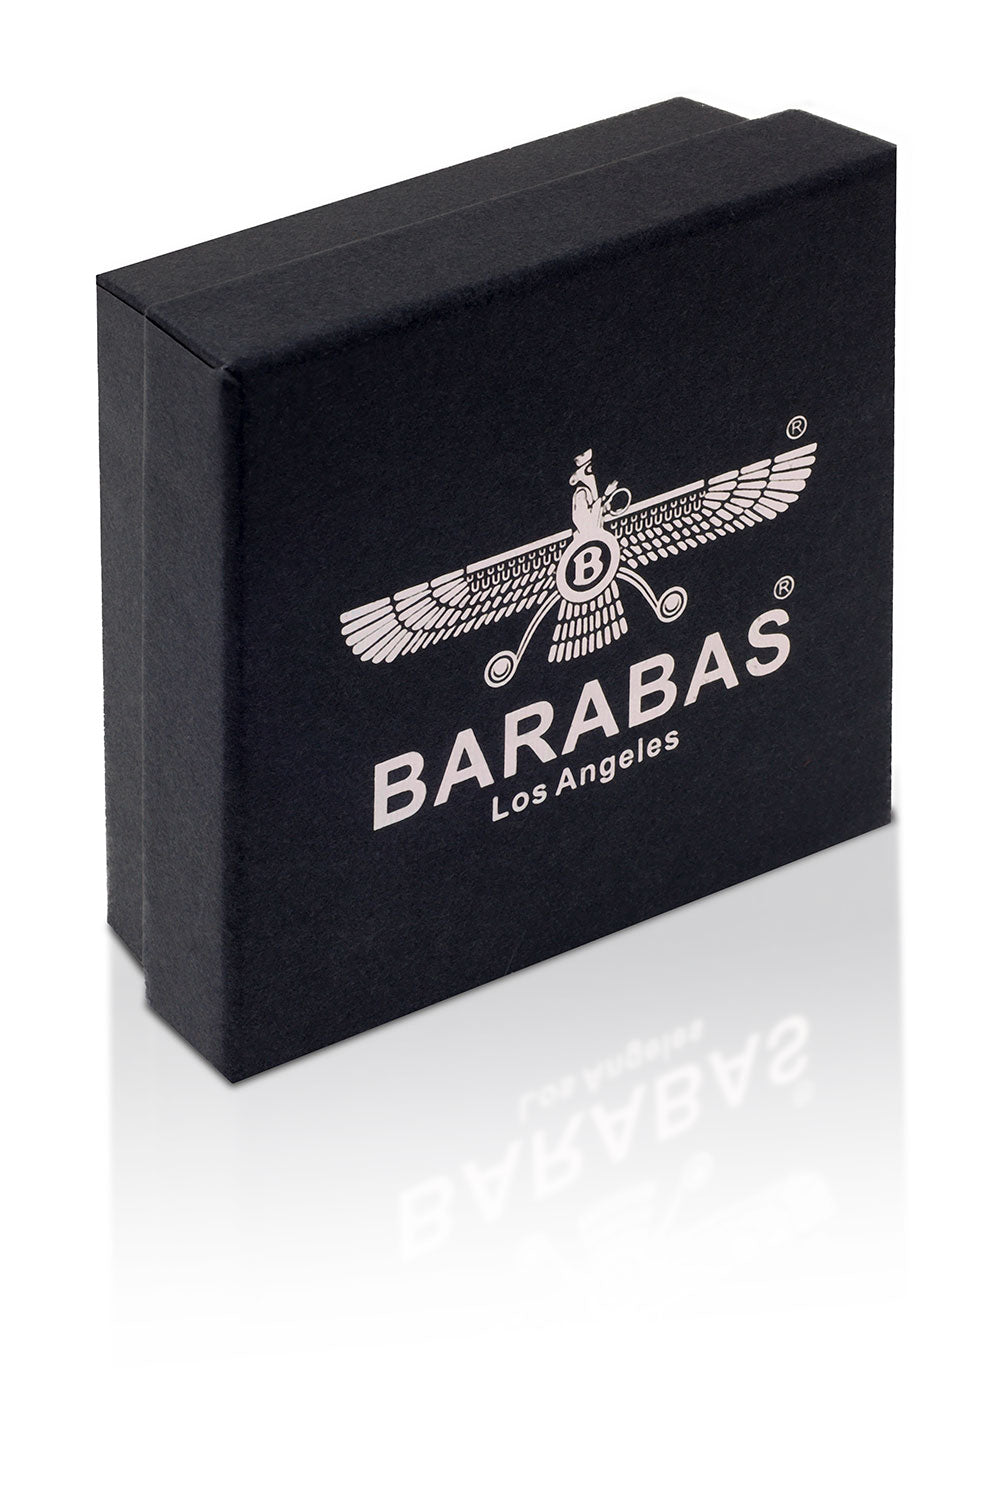 Barabas Unisex Multi-Layer Rope Braided Leather Bangle Bracelets 4BMS16 Black